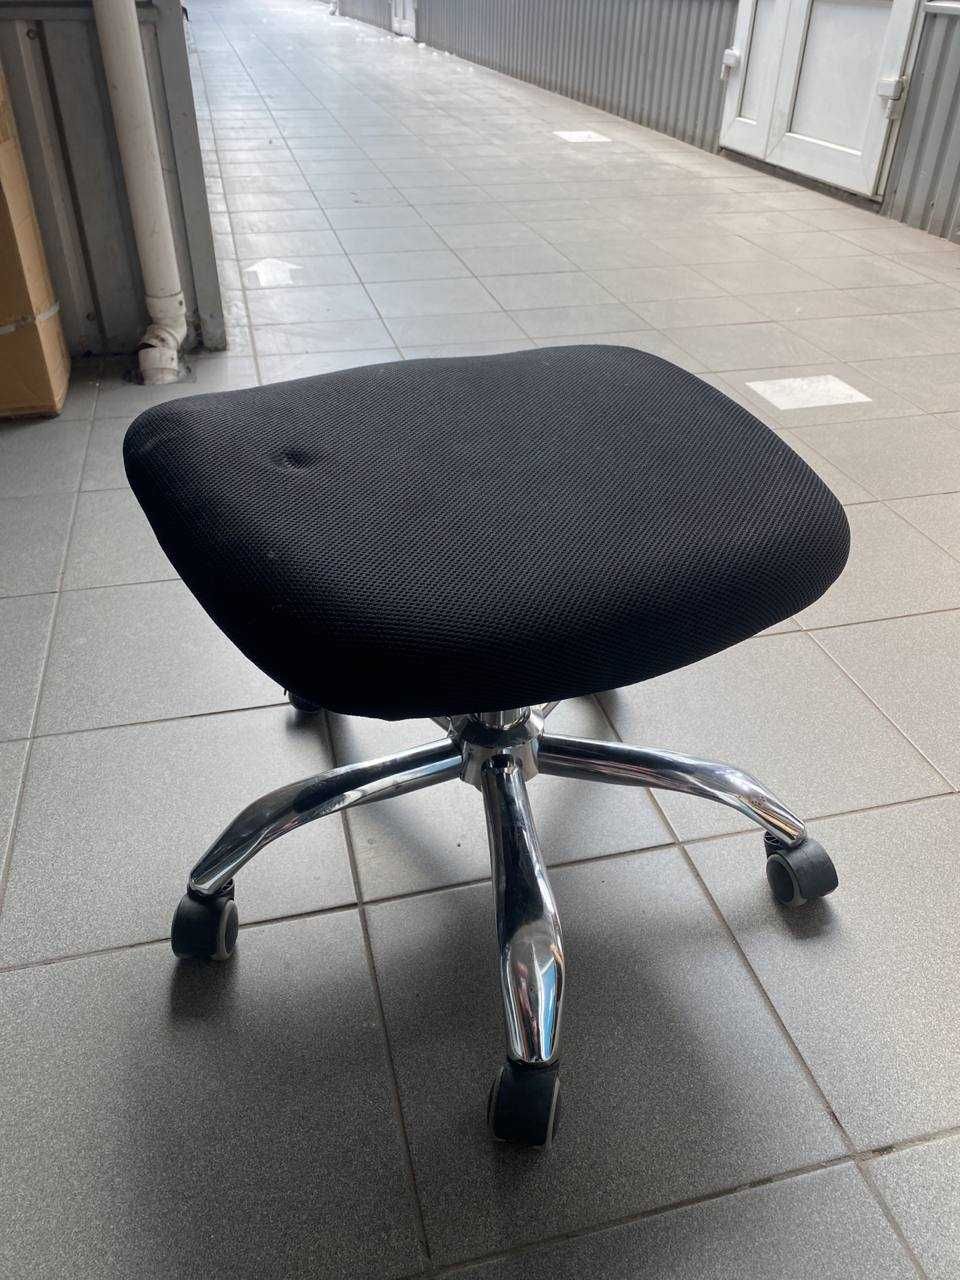 РОЗПРОДАЖ офісної меблі стільці крісла табурети стулья кресла